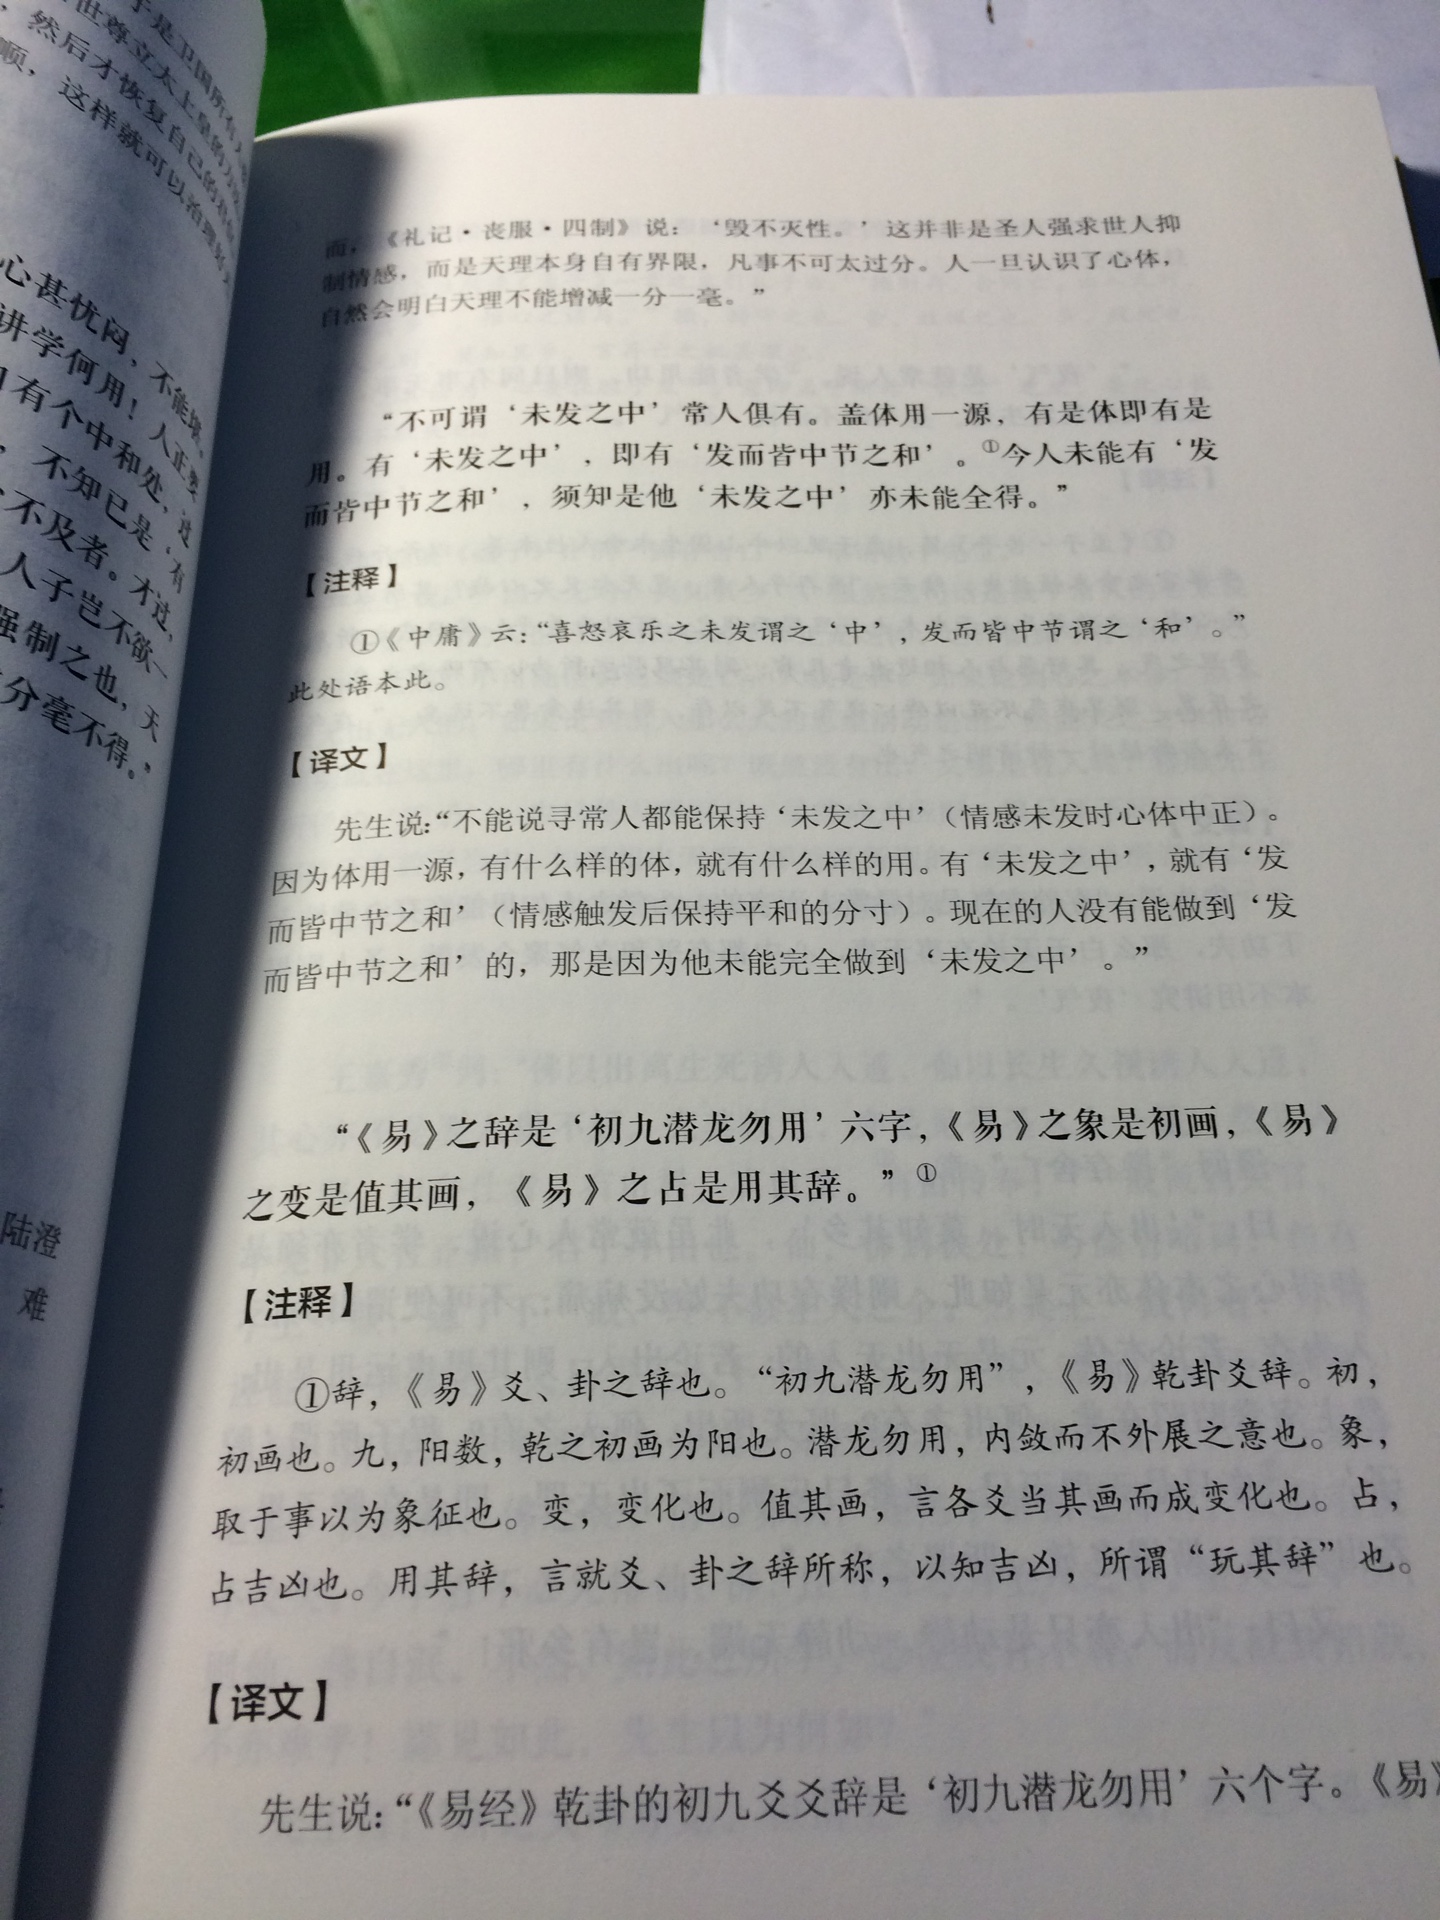 这是文学大师对于儒家圣人传习录的注释详解，既能提升我对于文言文的体认，也能更好领会王阳明心学的精神。目前正在习读王阳明大传。